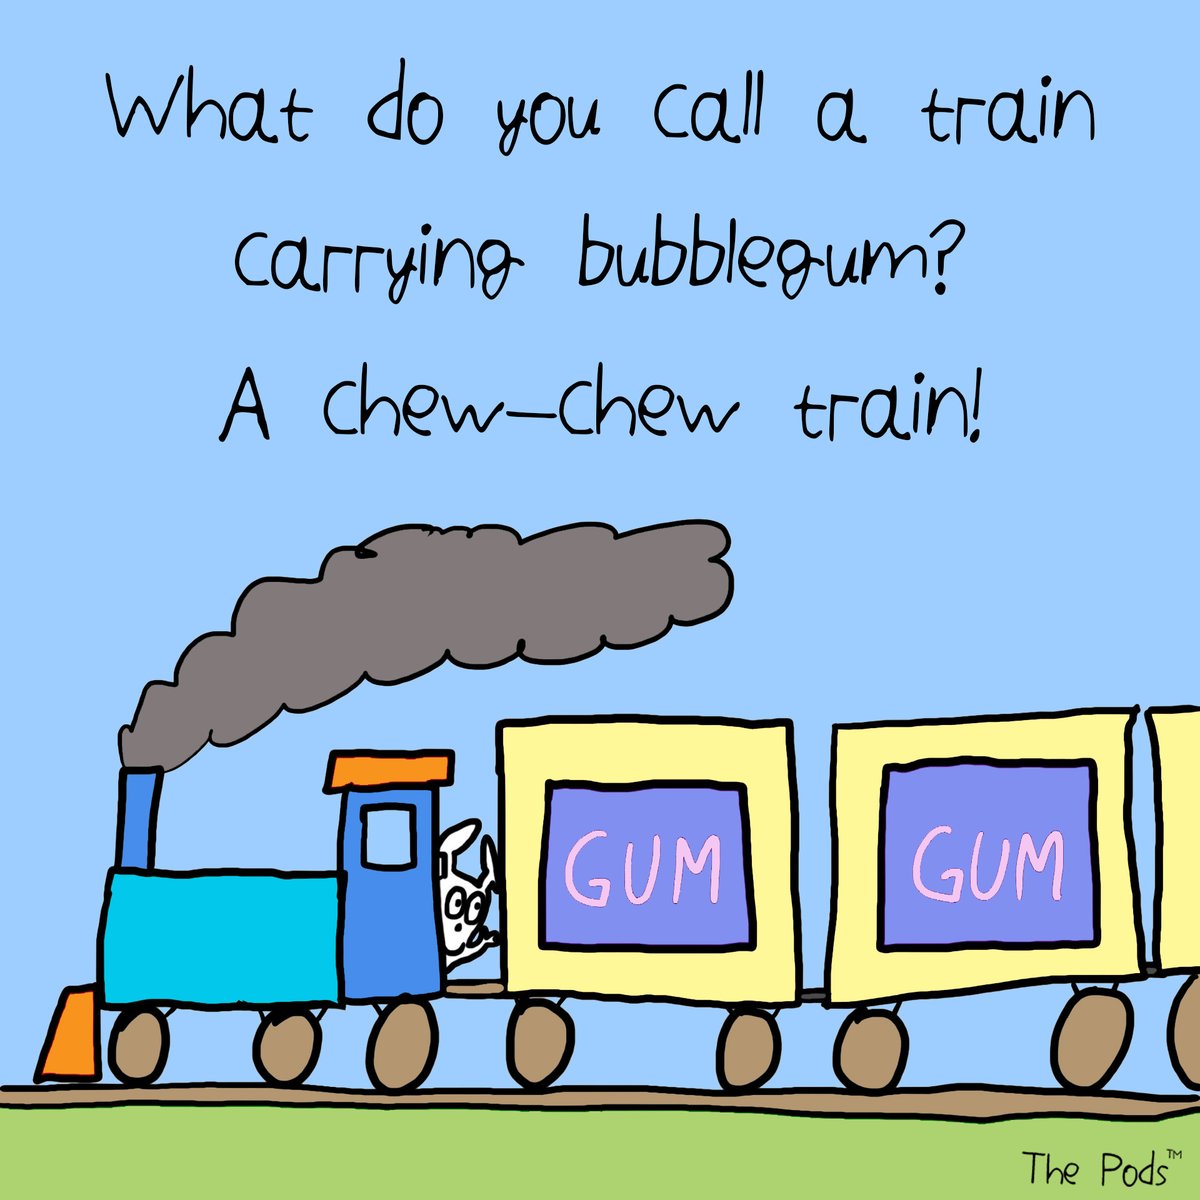 A silly joke for Sunday...
#joke #jokes #haha #hahaha #instajoke #jokeoftheday #silly #trainjoke #train #meetthepods #thepods #bunnypod #sundaymorning #sundayfunday